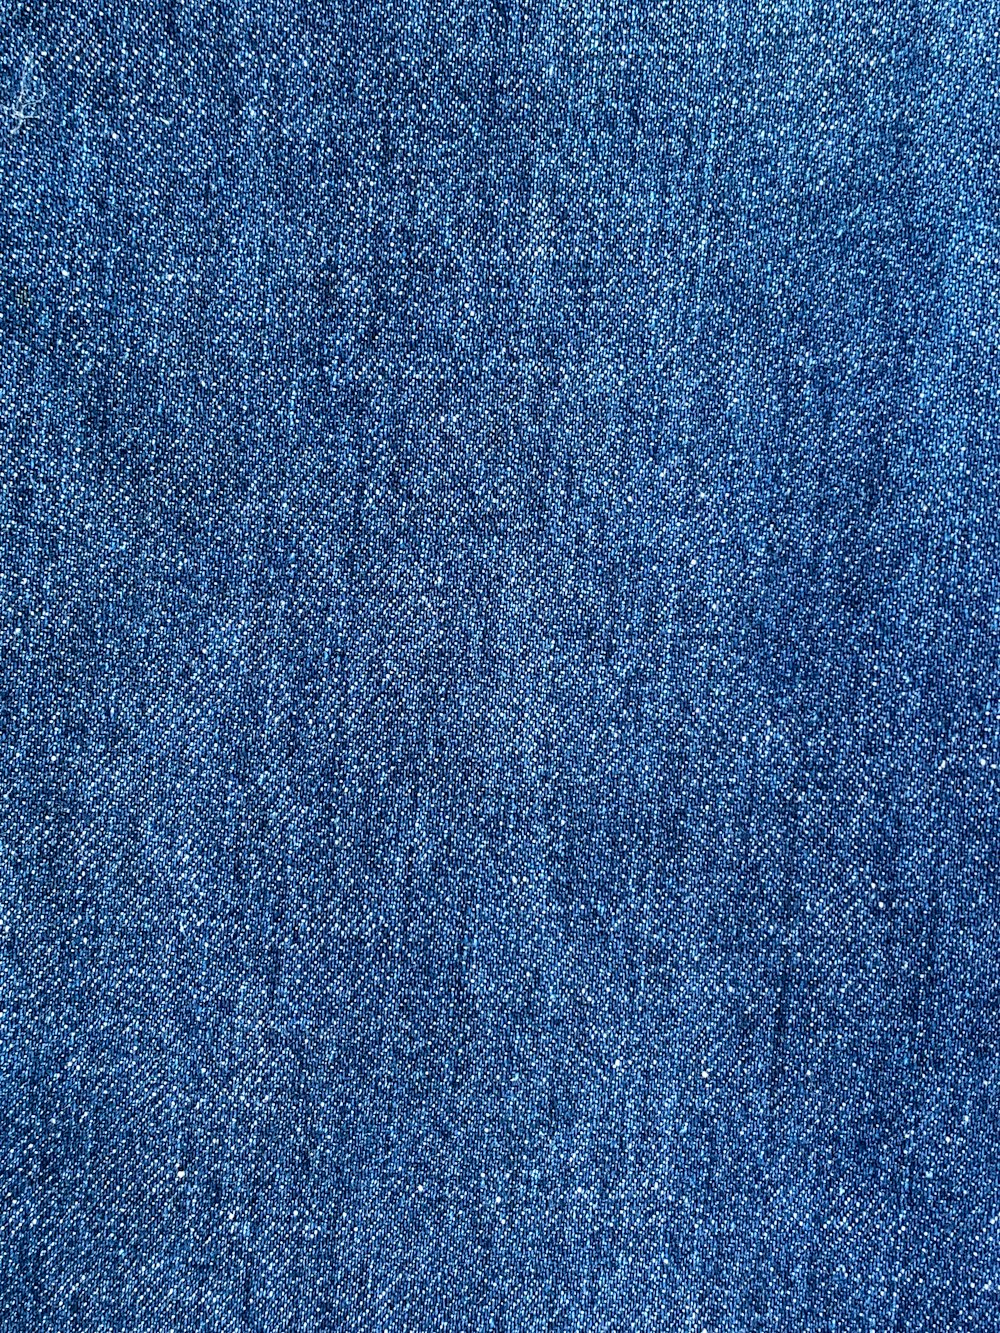 um close up de um tecido jeans azul